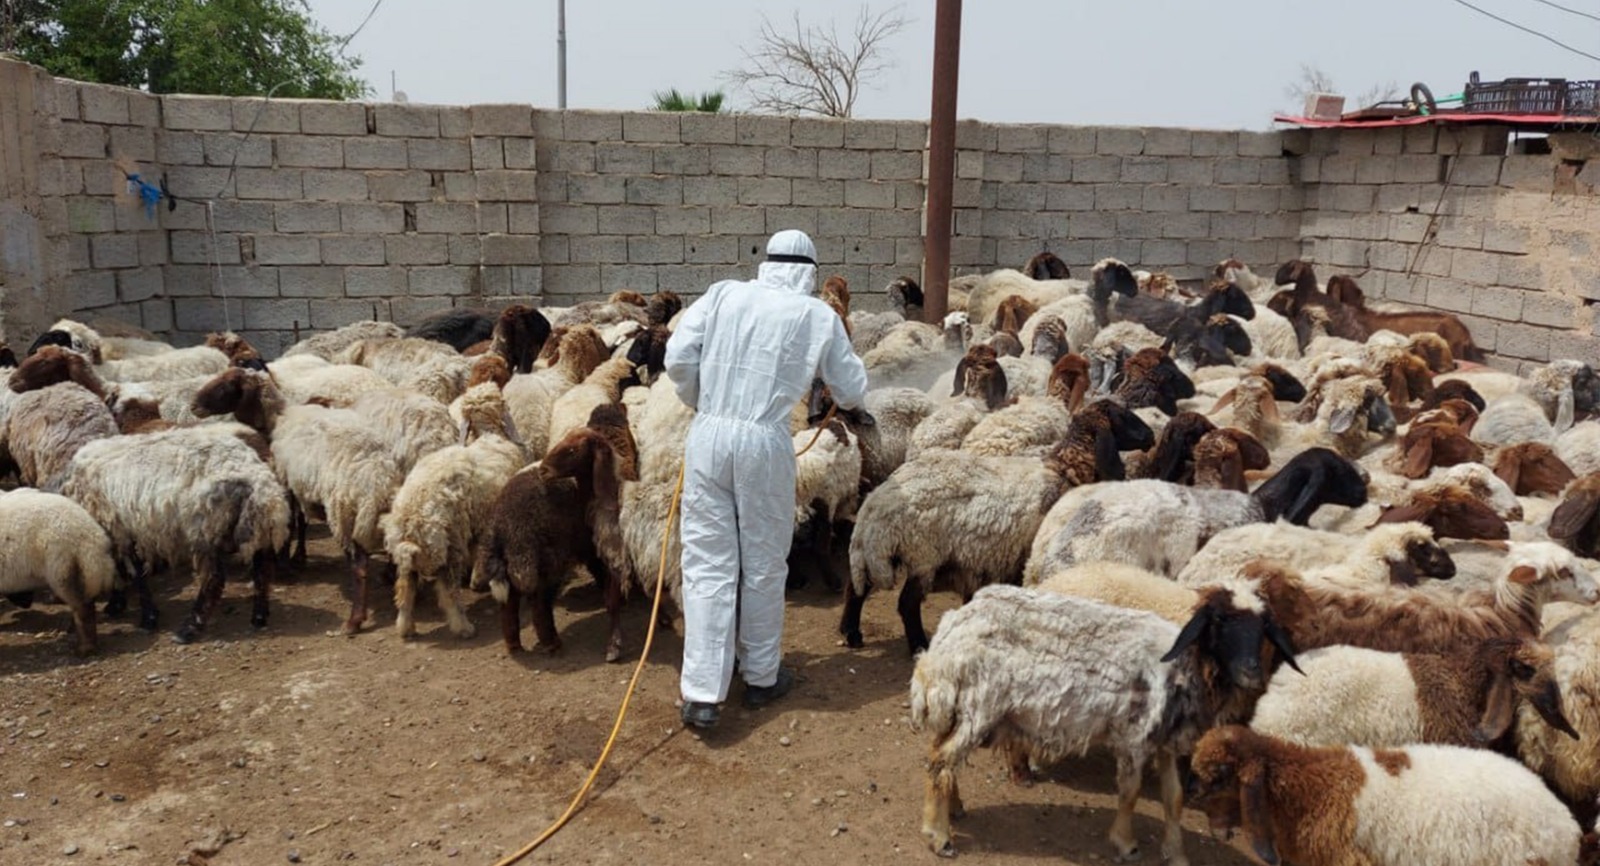 "غياب الدعم الحكومي والتهريب" يتسببان بهجرة جماعية لمربي الحيوانات في صلاح الدين